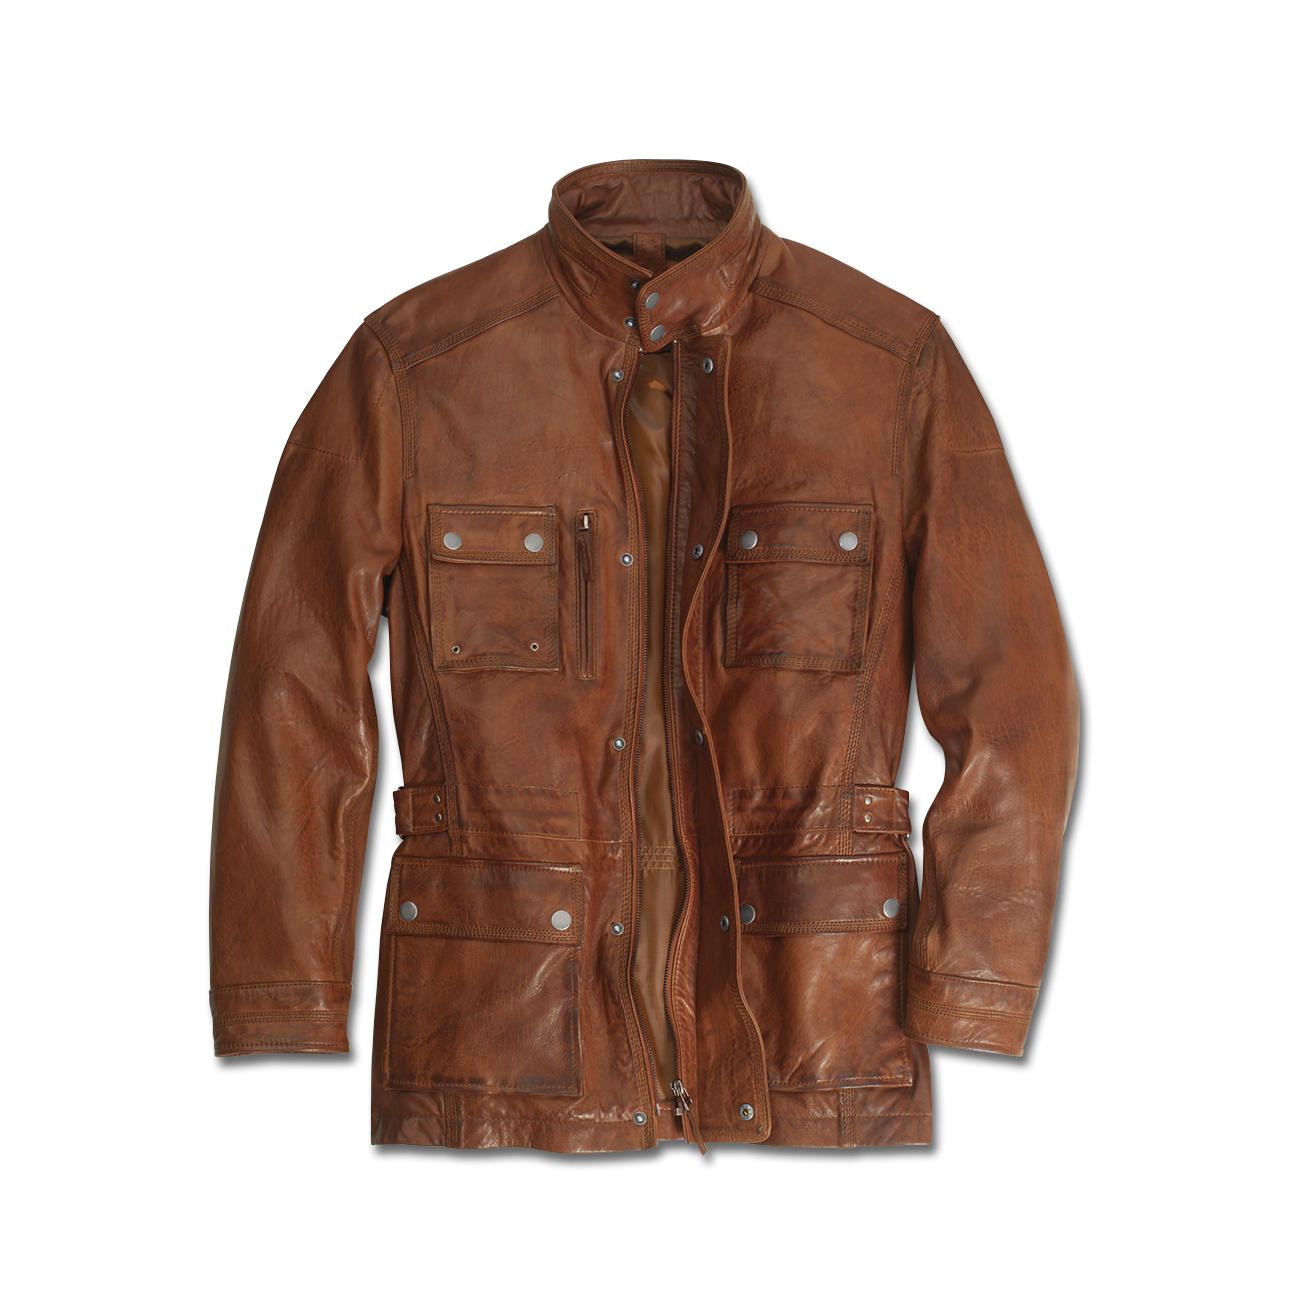 Buy Lambskin Leather Field Jacket online